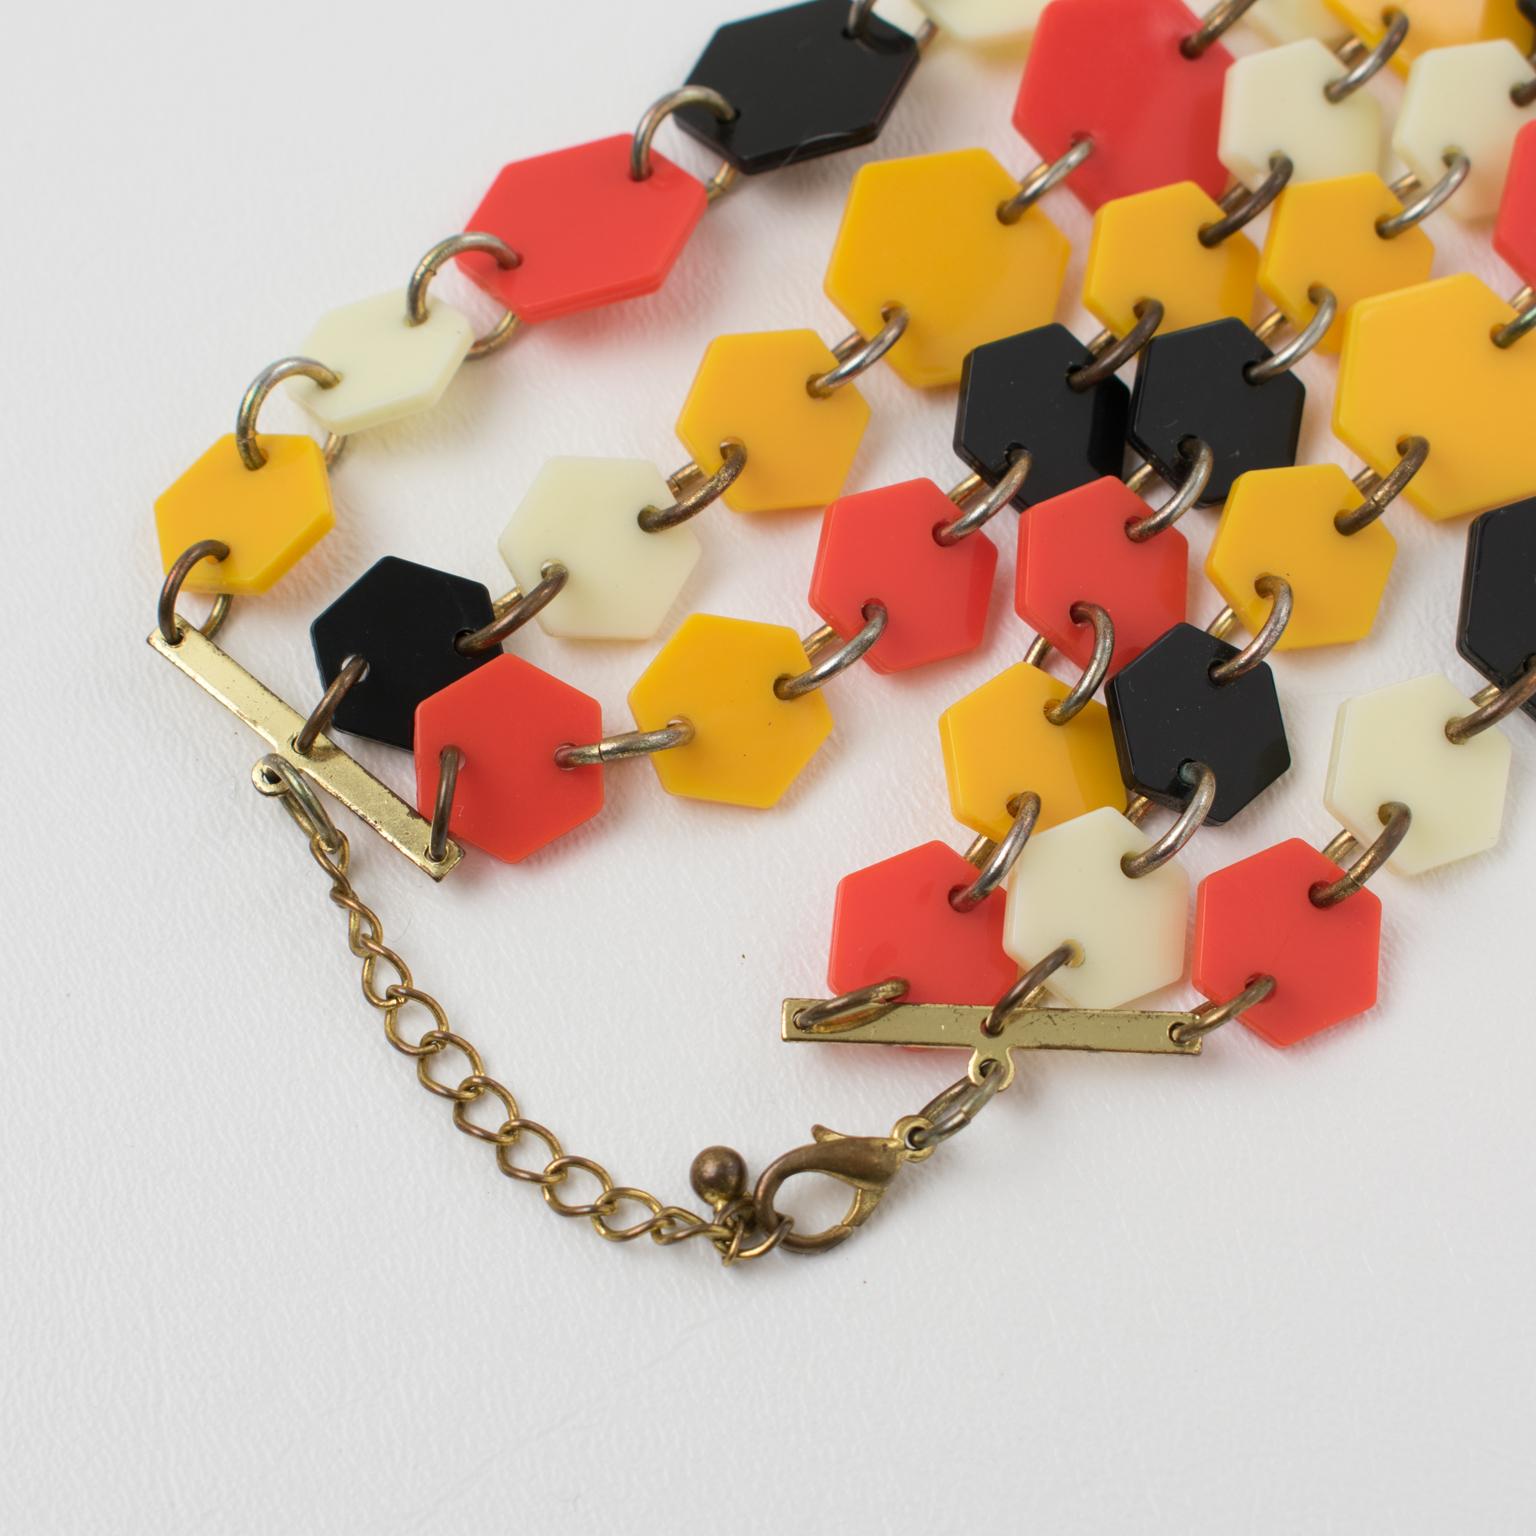 Geometric Multi-Strand Orange, Black and White Lucite Necklace For Sale 1